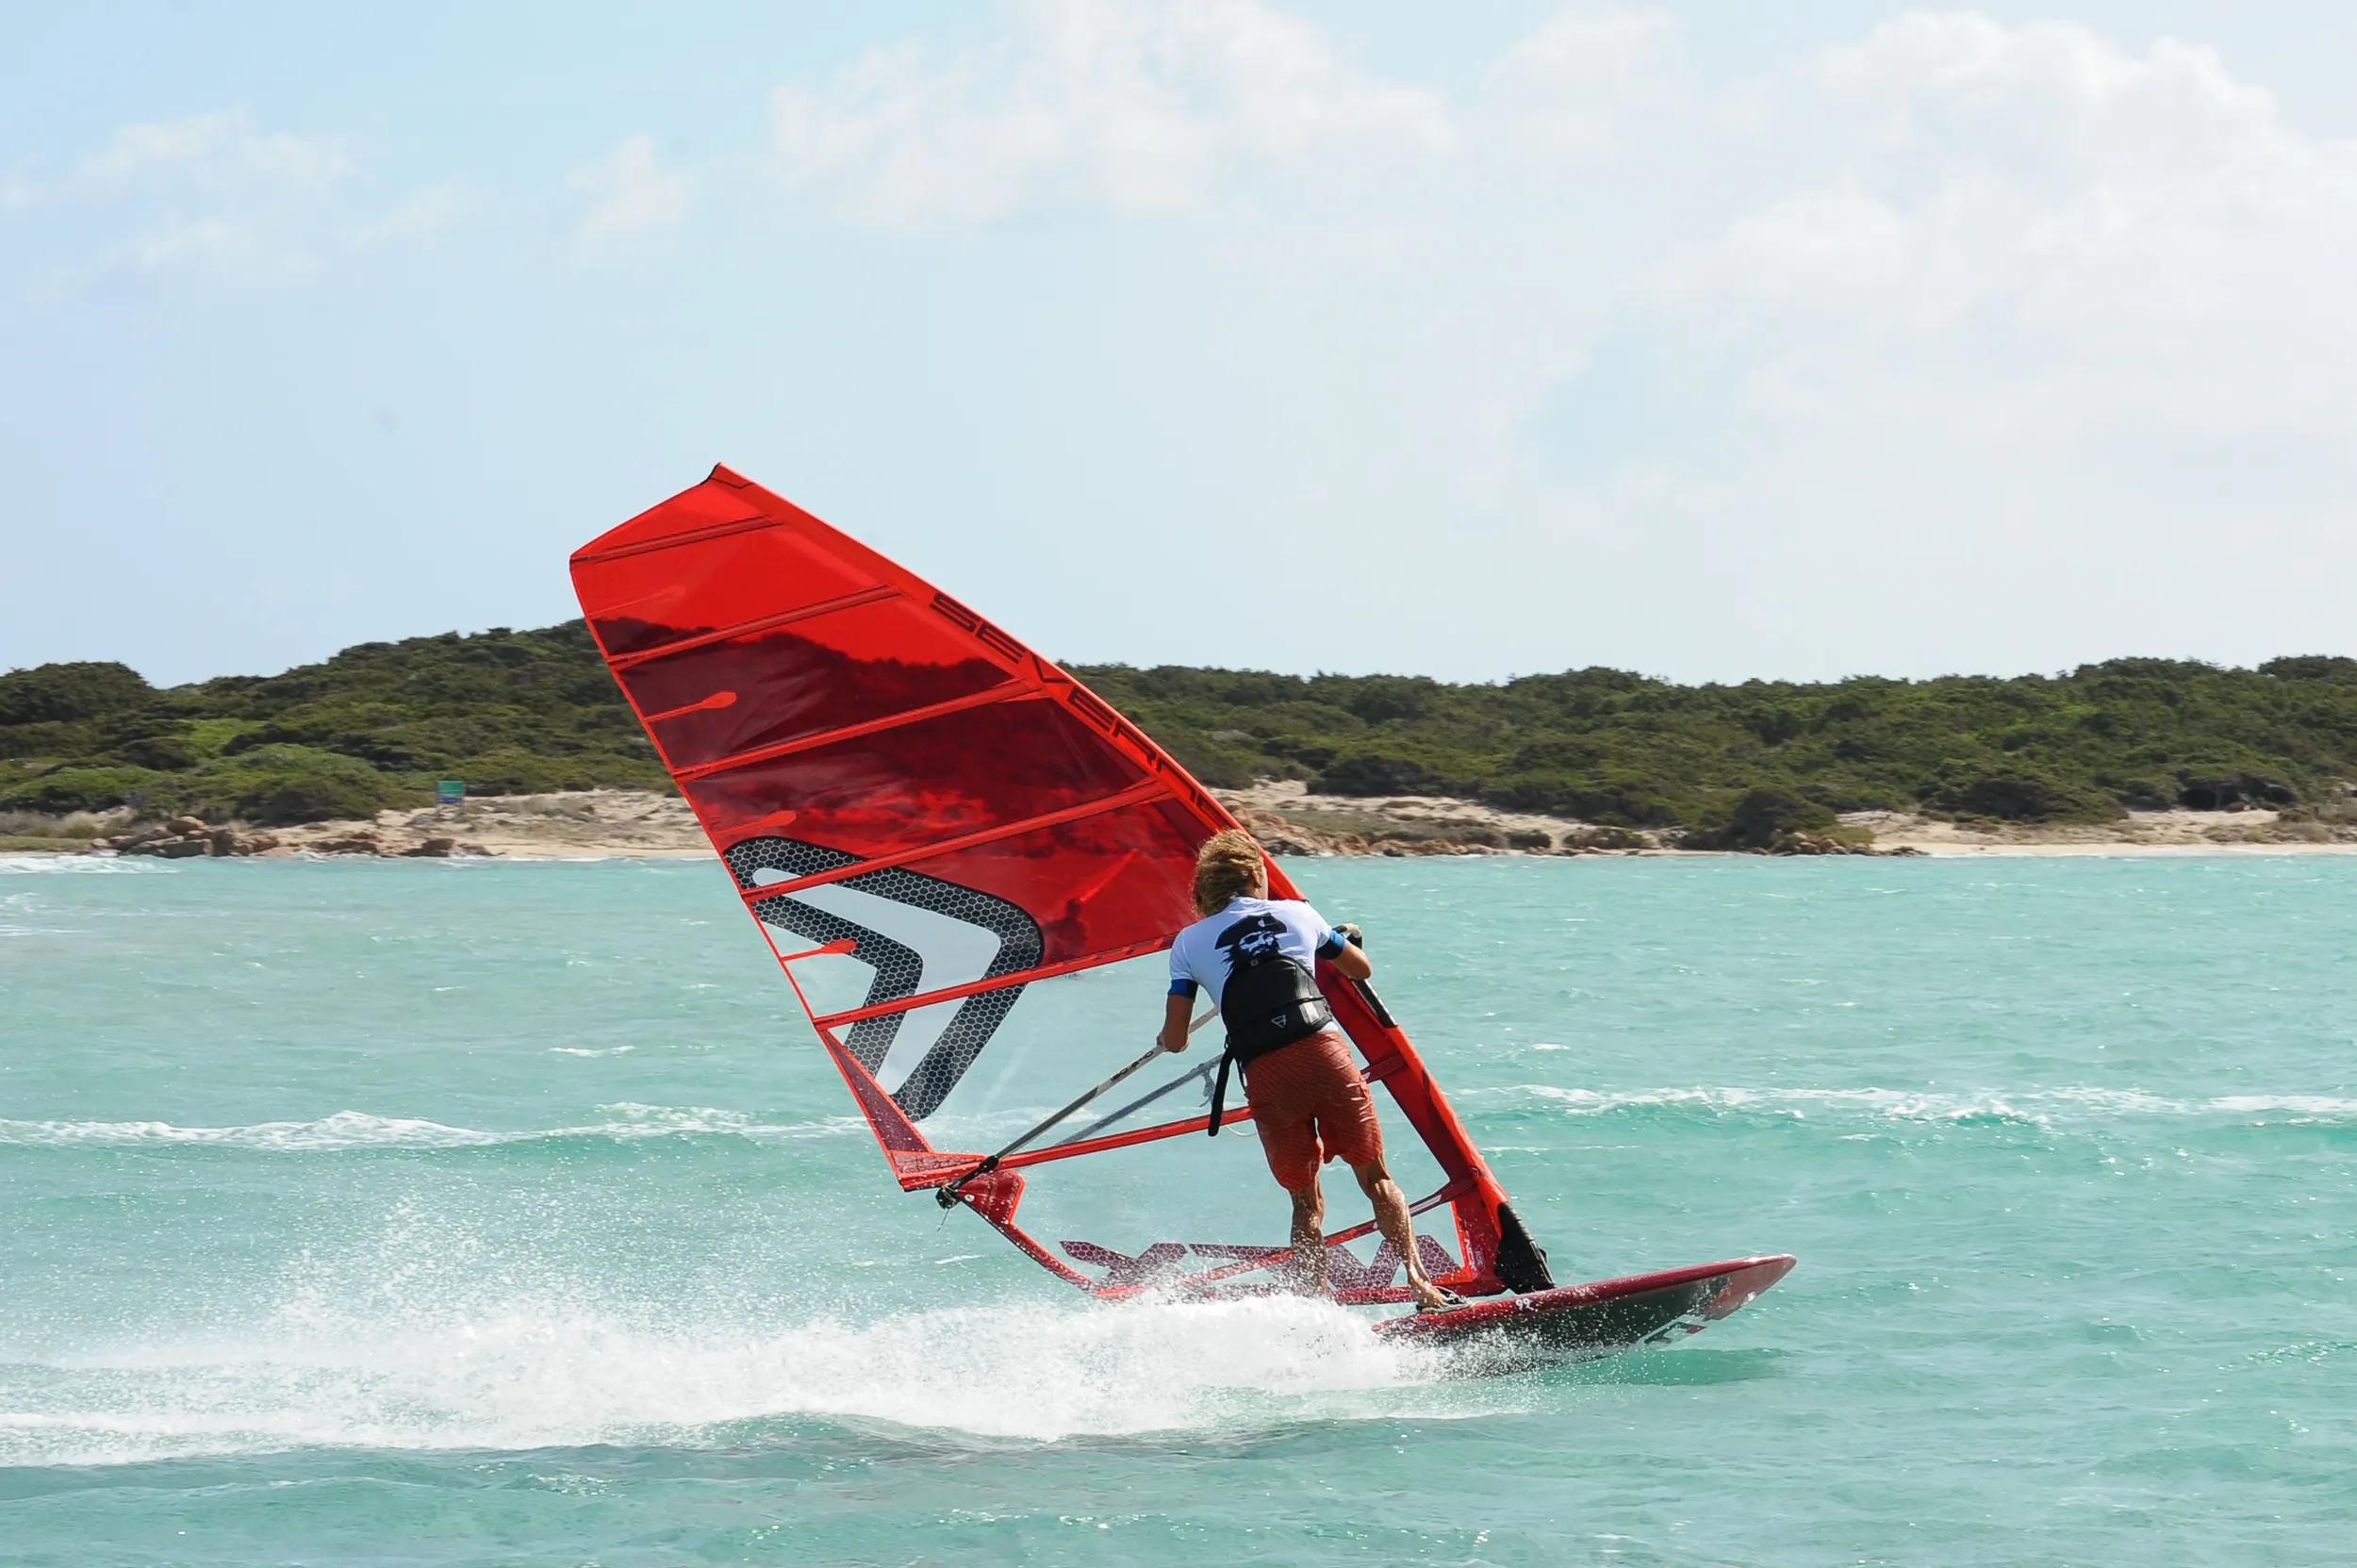 Pratiquer le windsurf en toute sécurité à Bonifacio